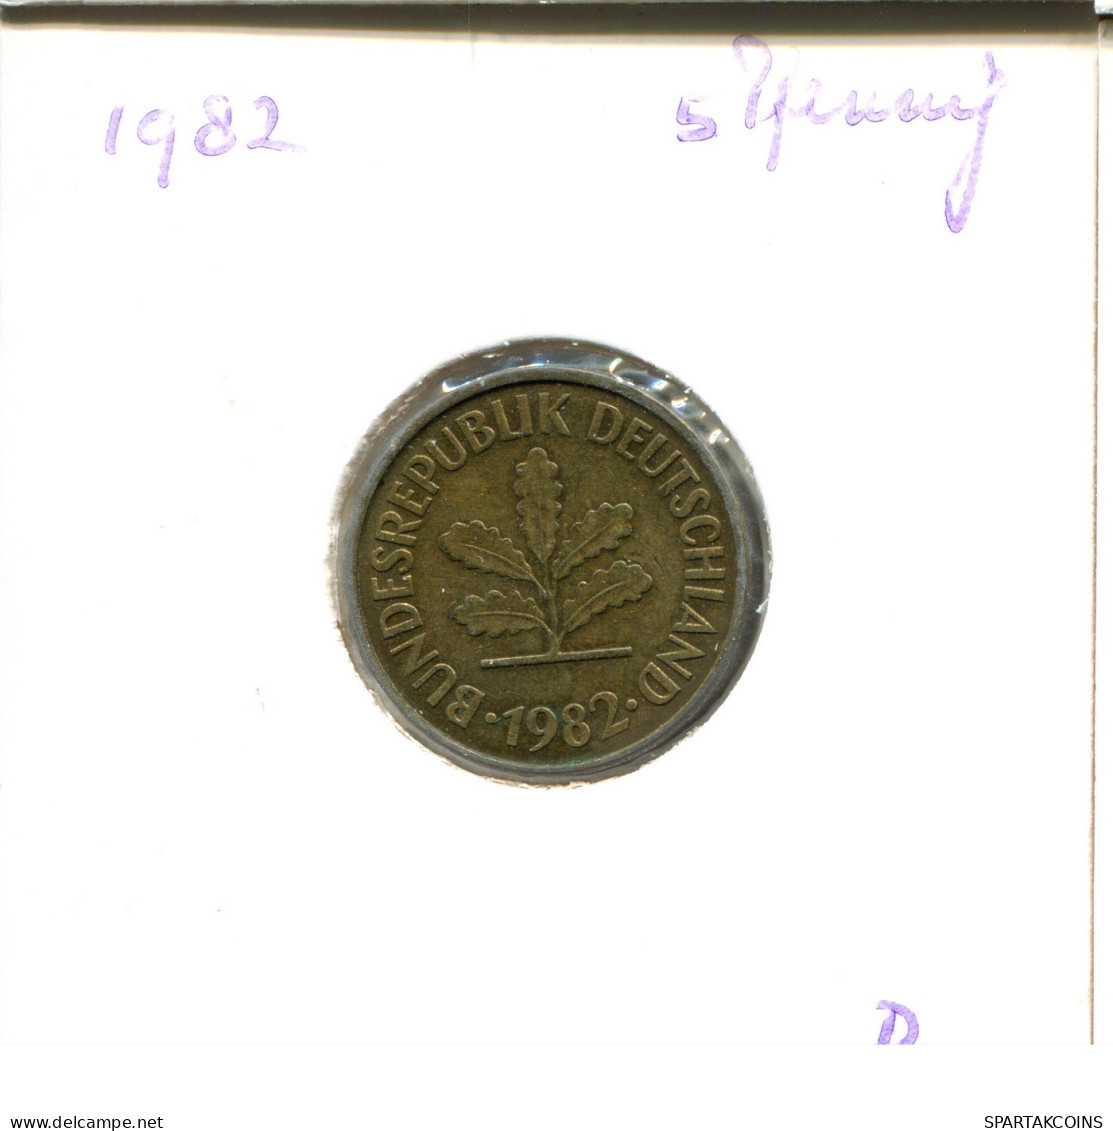 5 PFENNIG 1982 D WEST & UNIFIED GERMANY Coin #DA991.U - 5 Pfennig